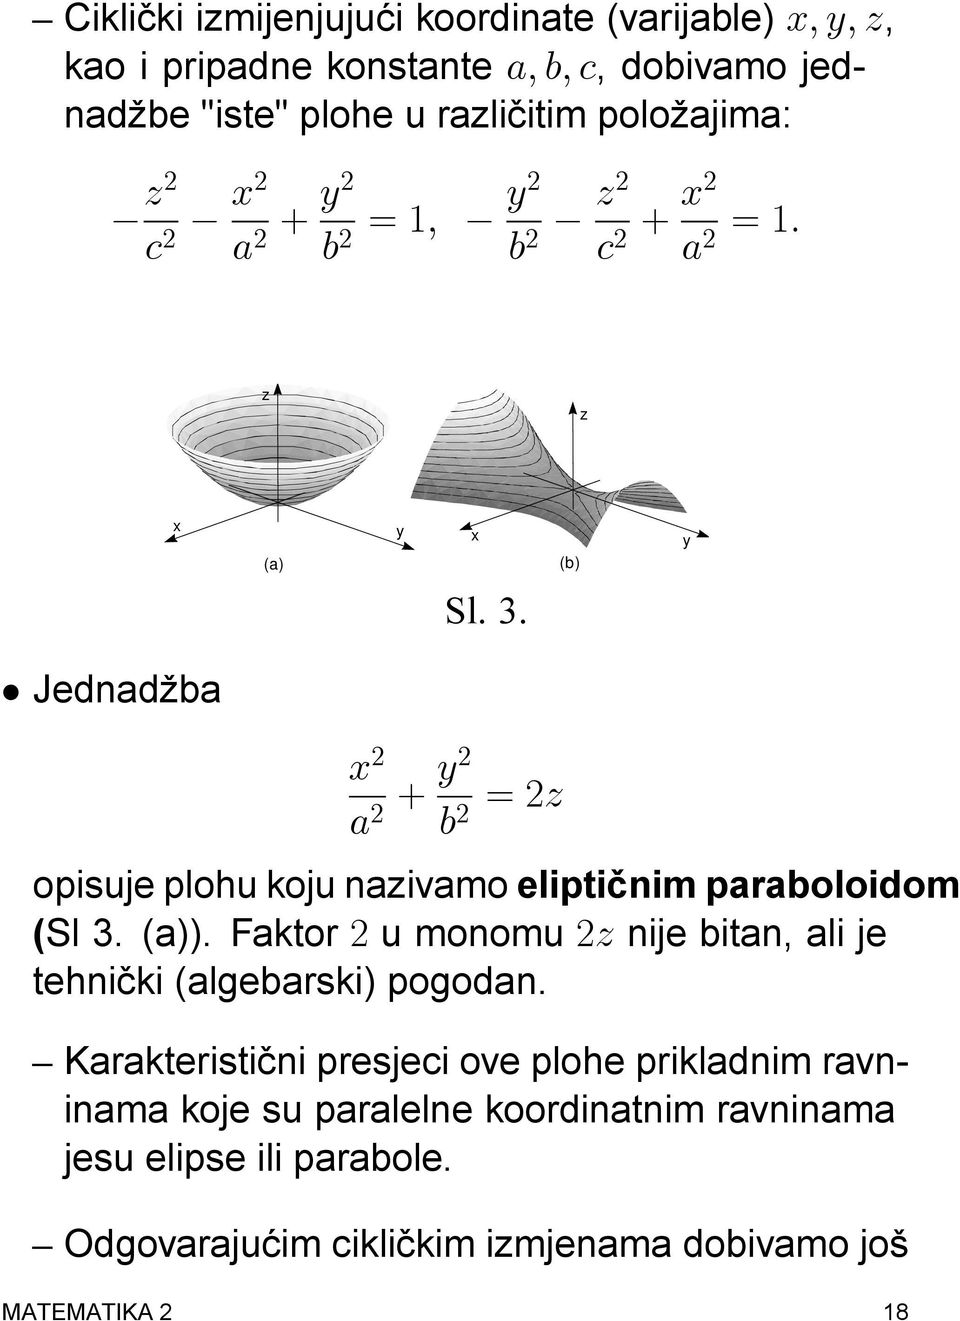 Jednadba x 2 a 2 + y2 b 2 = 2z opisuje plohu koju nazivamo elipti cnim paraboloidom (Sl 3. (a)).